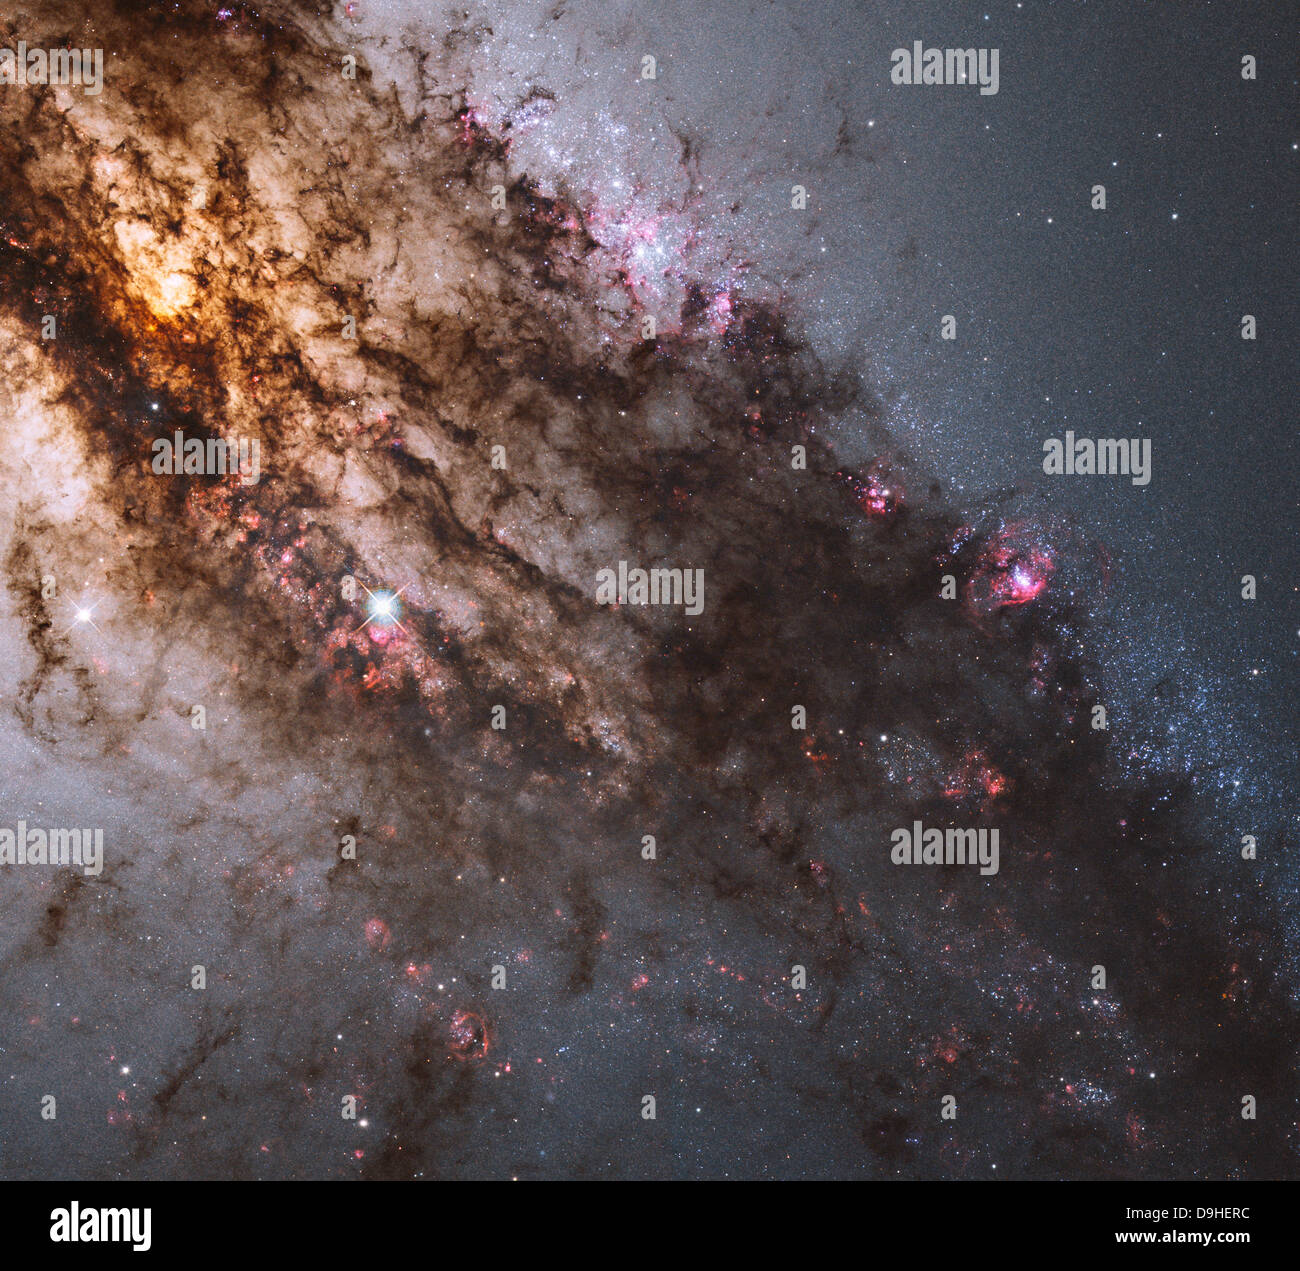 Callejones oscuros de polvo atraviesan la galaxia elíptica Centaurus A. Foto de stock